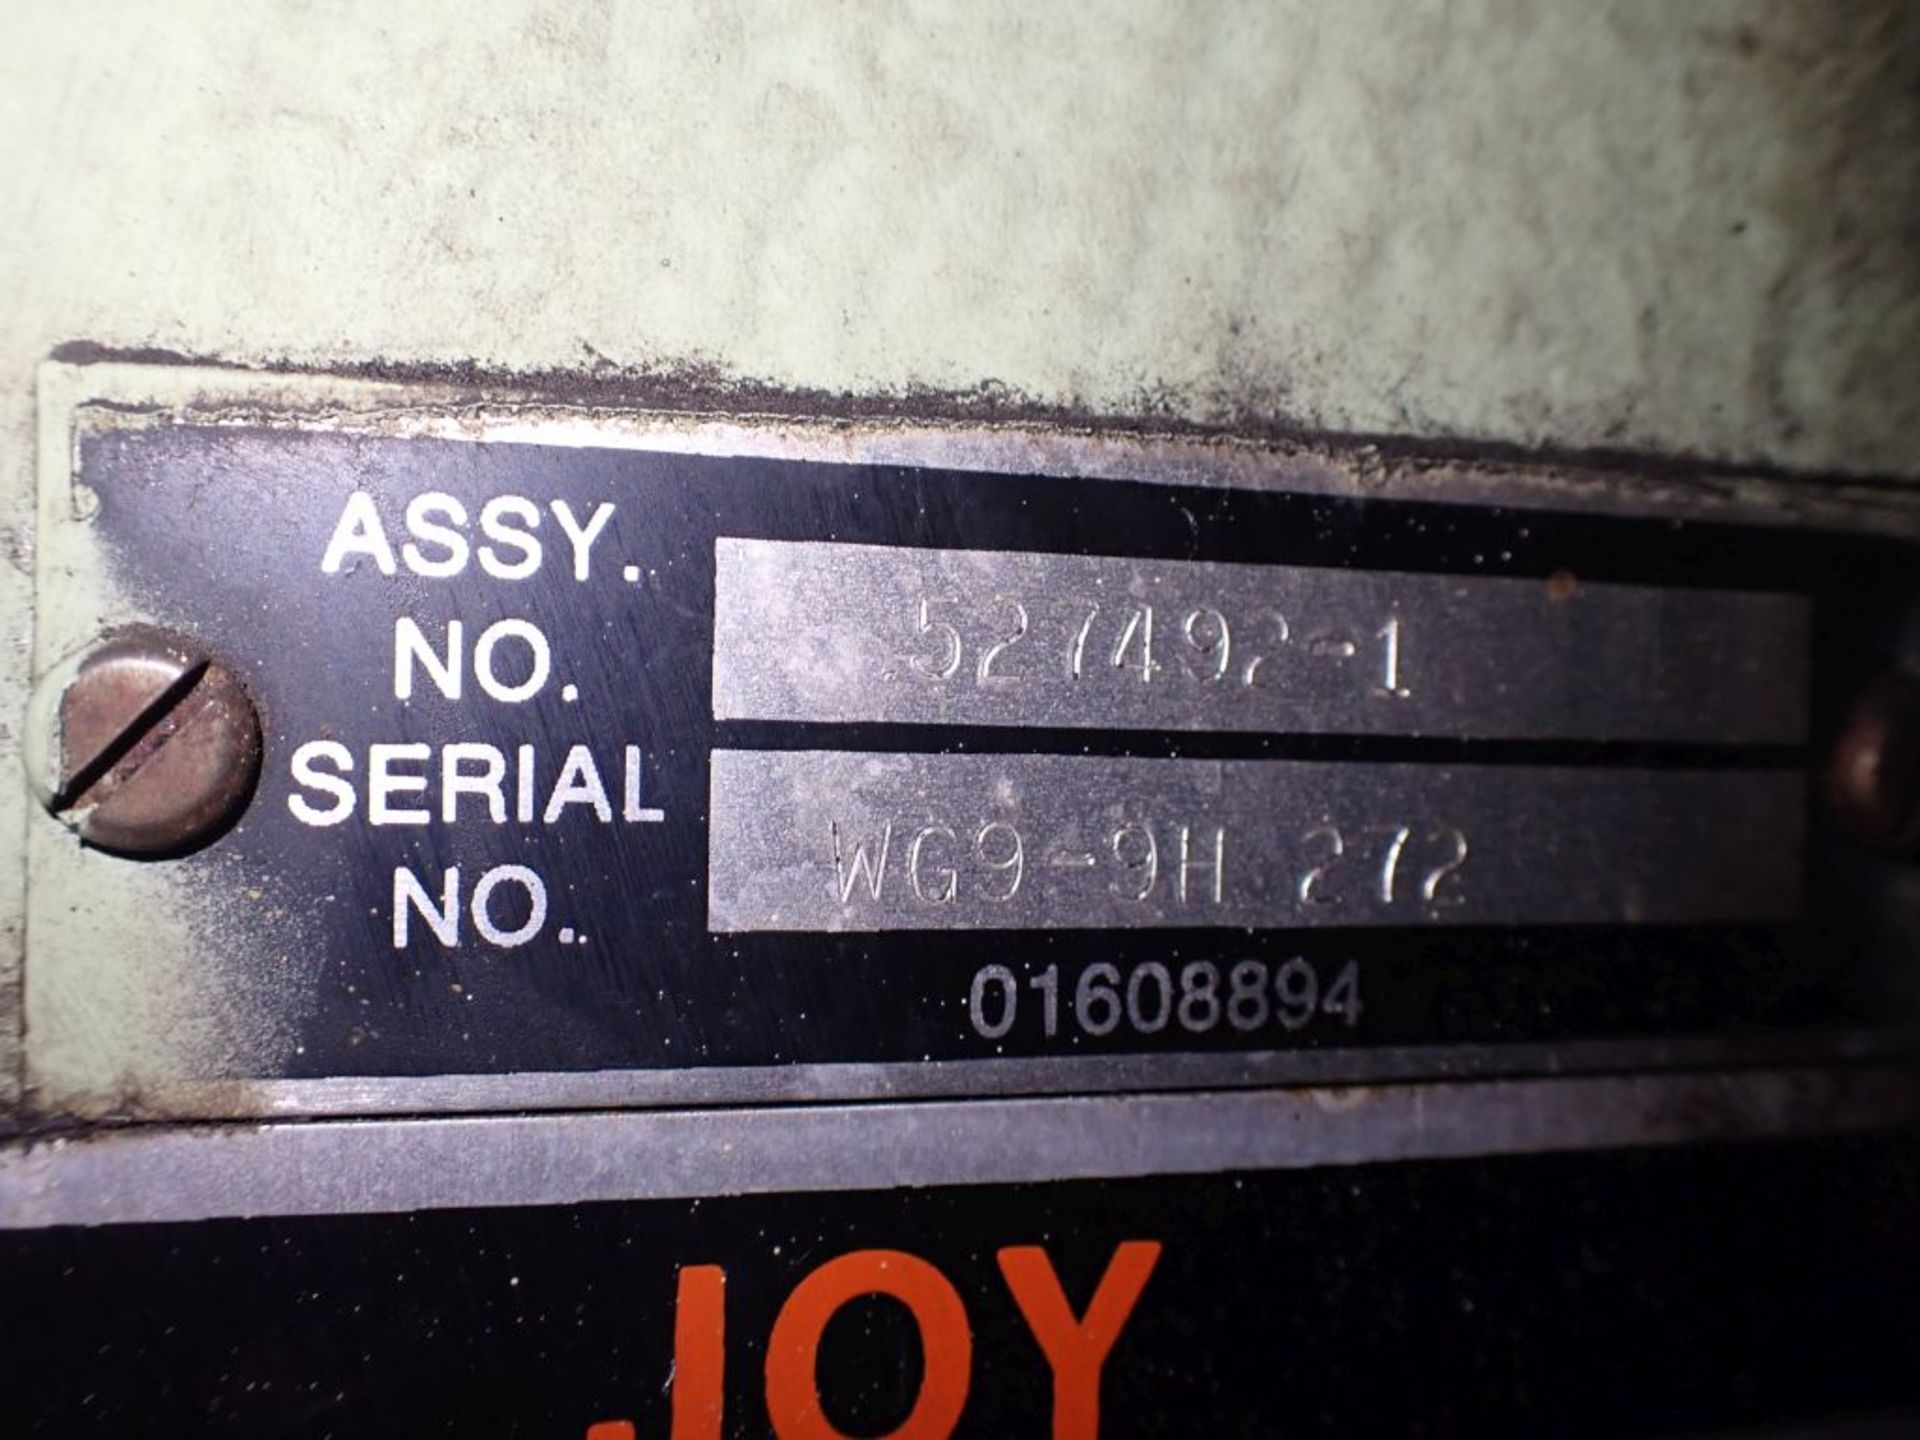 Joy 100 HP Air Compressor | Part No. 526337; Class: WGPOL9H; Size: 12.5 x 8; 114 Original Hours - Image 10 of 23